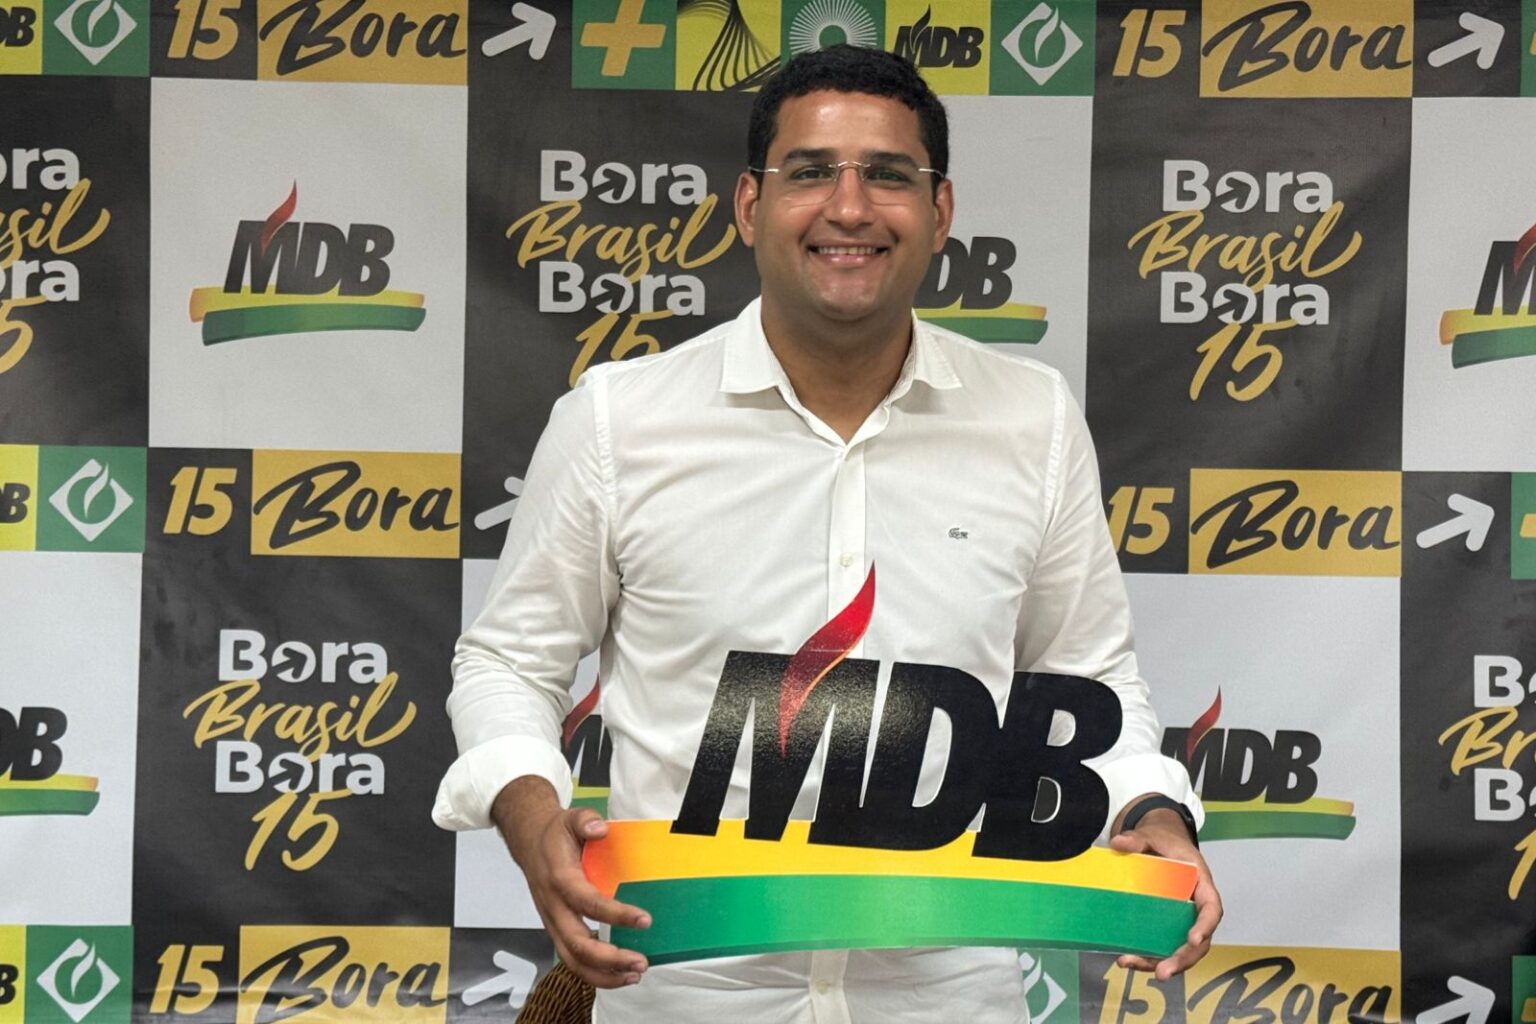  Dr. Ademir Alves Lança Pré-candidatura à Prefeitura de Bonito com Apoio de Líderes Políticos